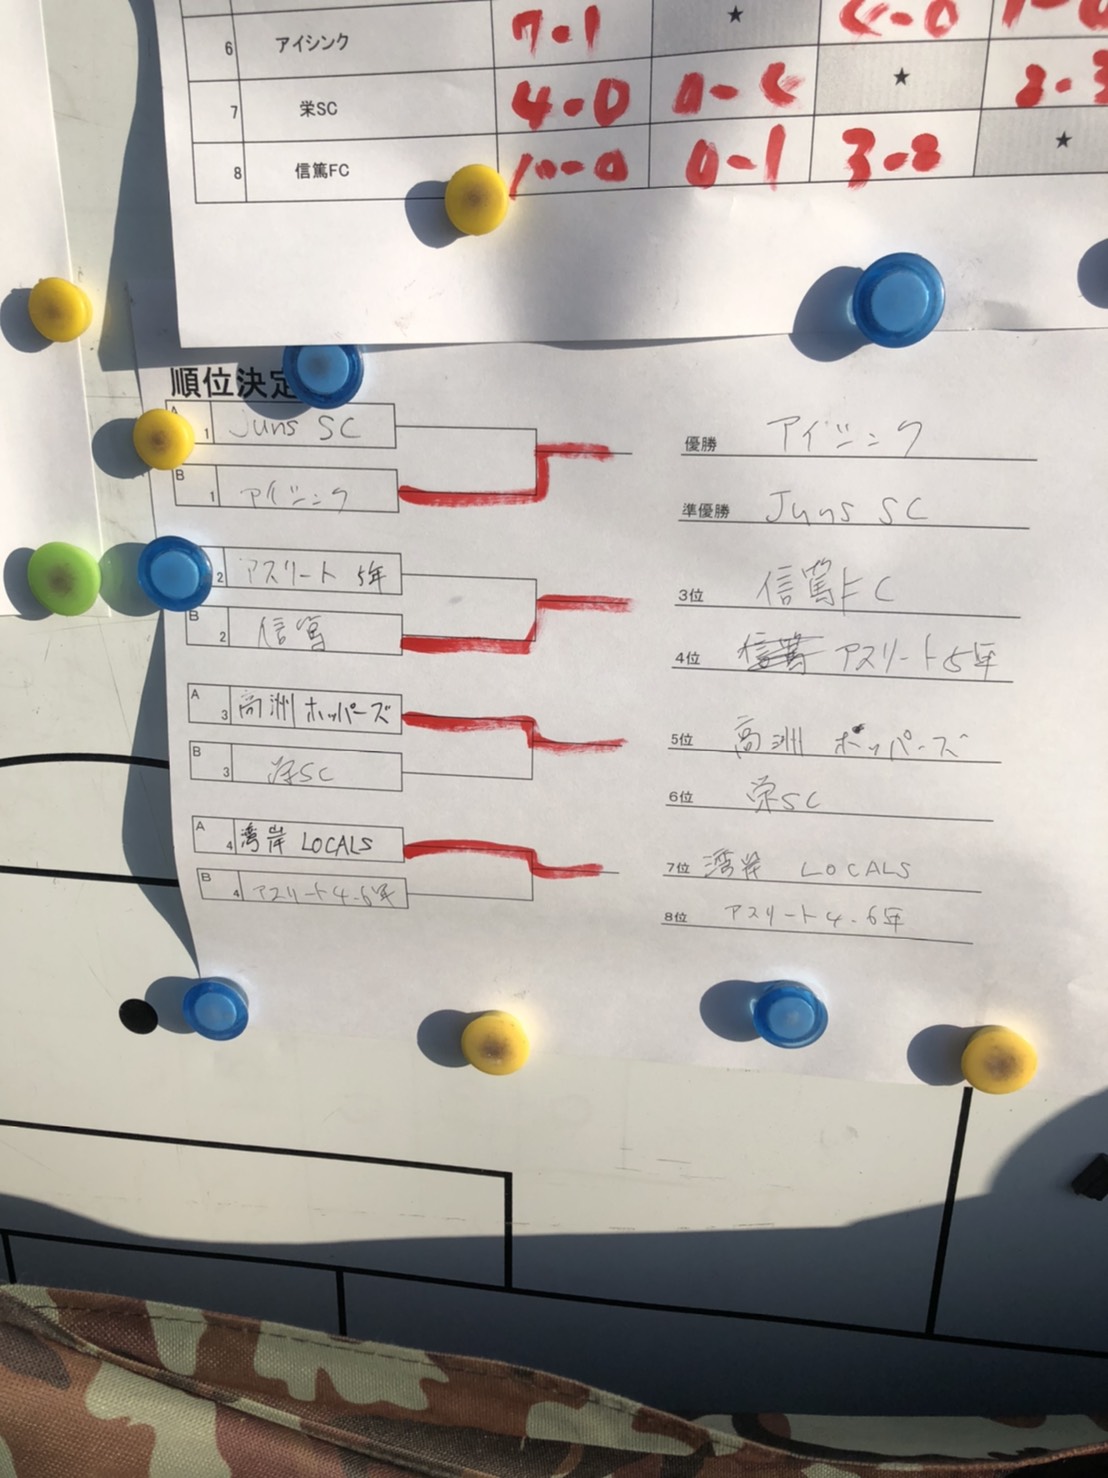 五年生優勝 アスリートカップu11u10 川口アイシンク少年サッカー 川口市の幼児 小学生一 二 三 四年生のチーム